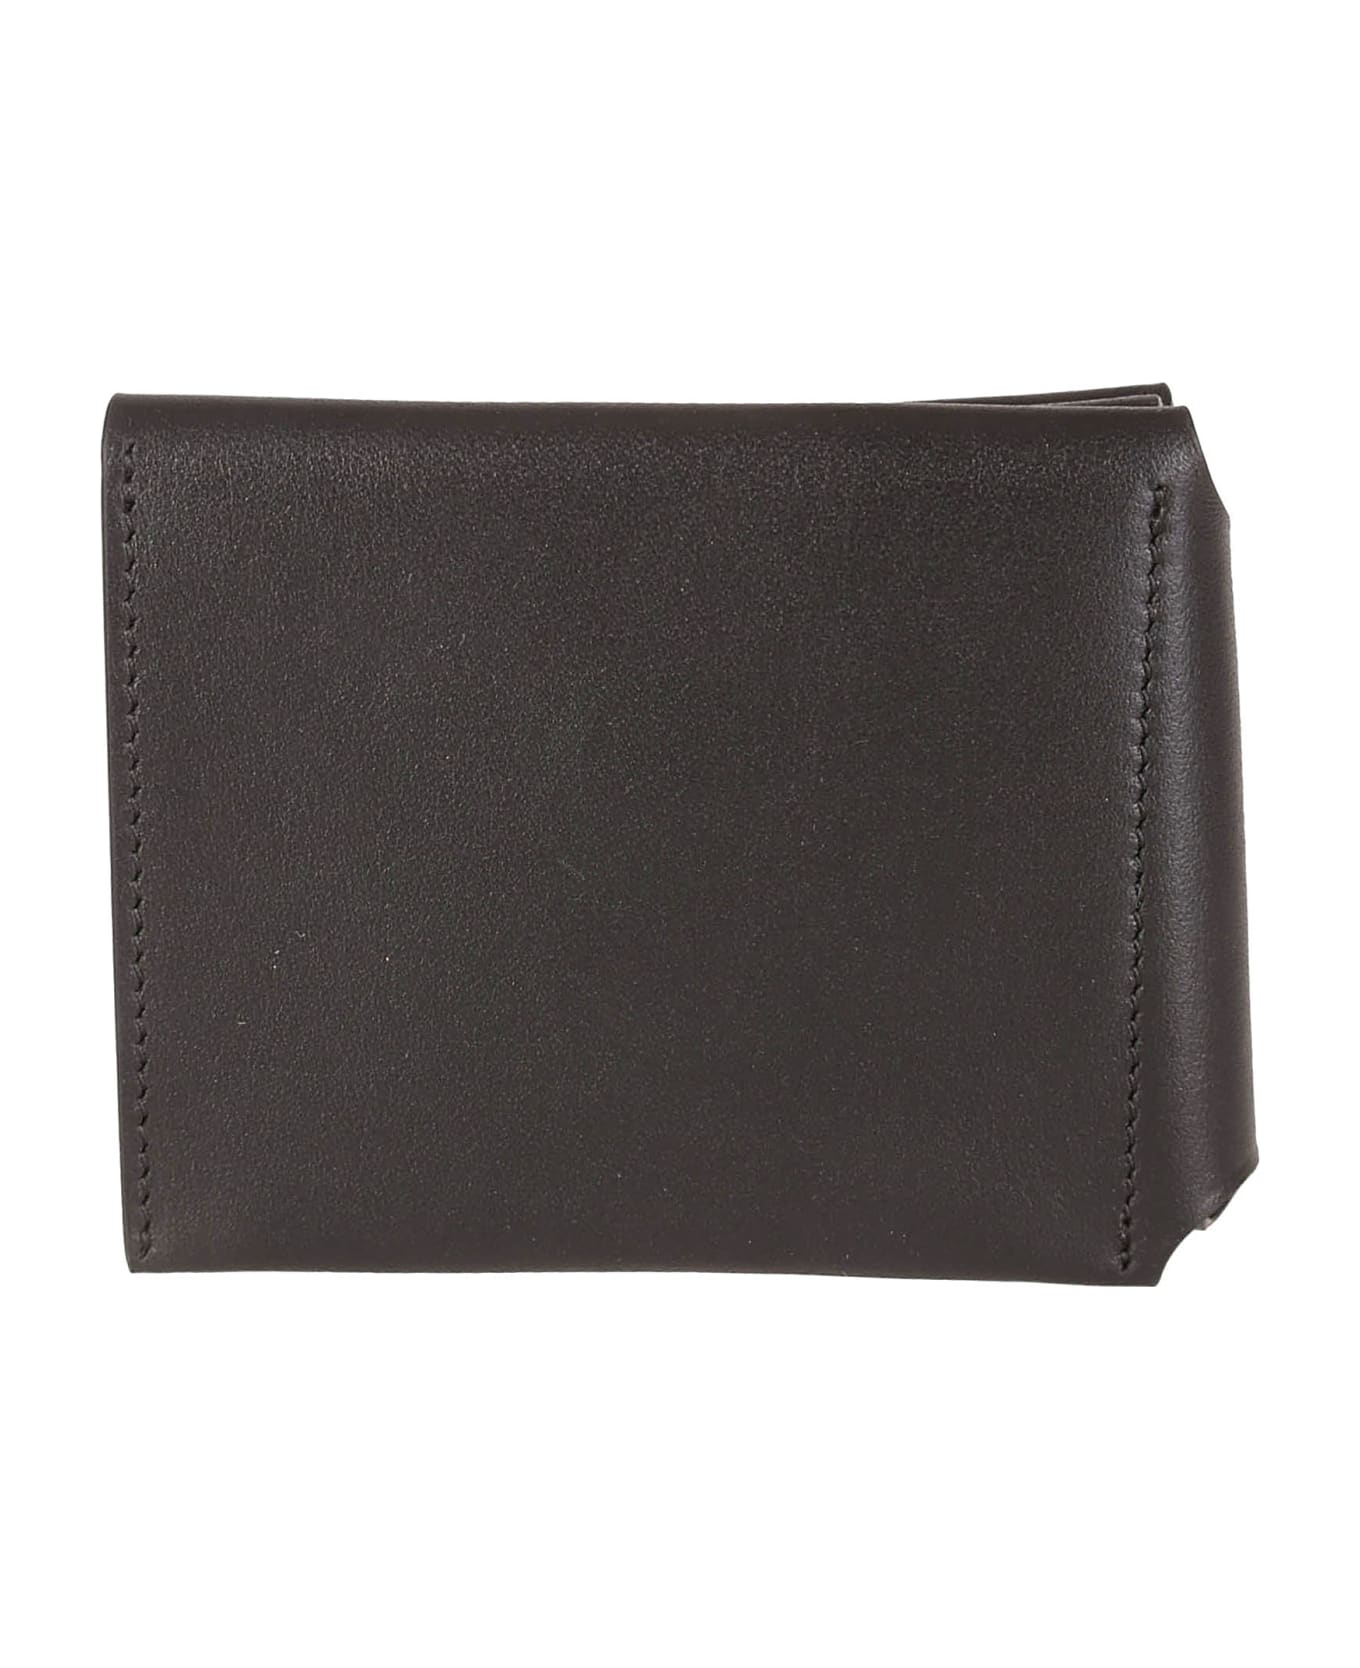 Acne Studios Wallet - Black 財布